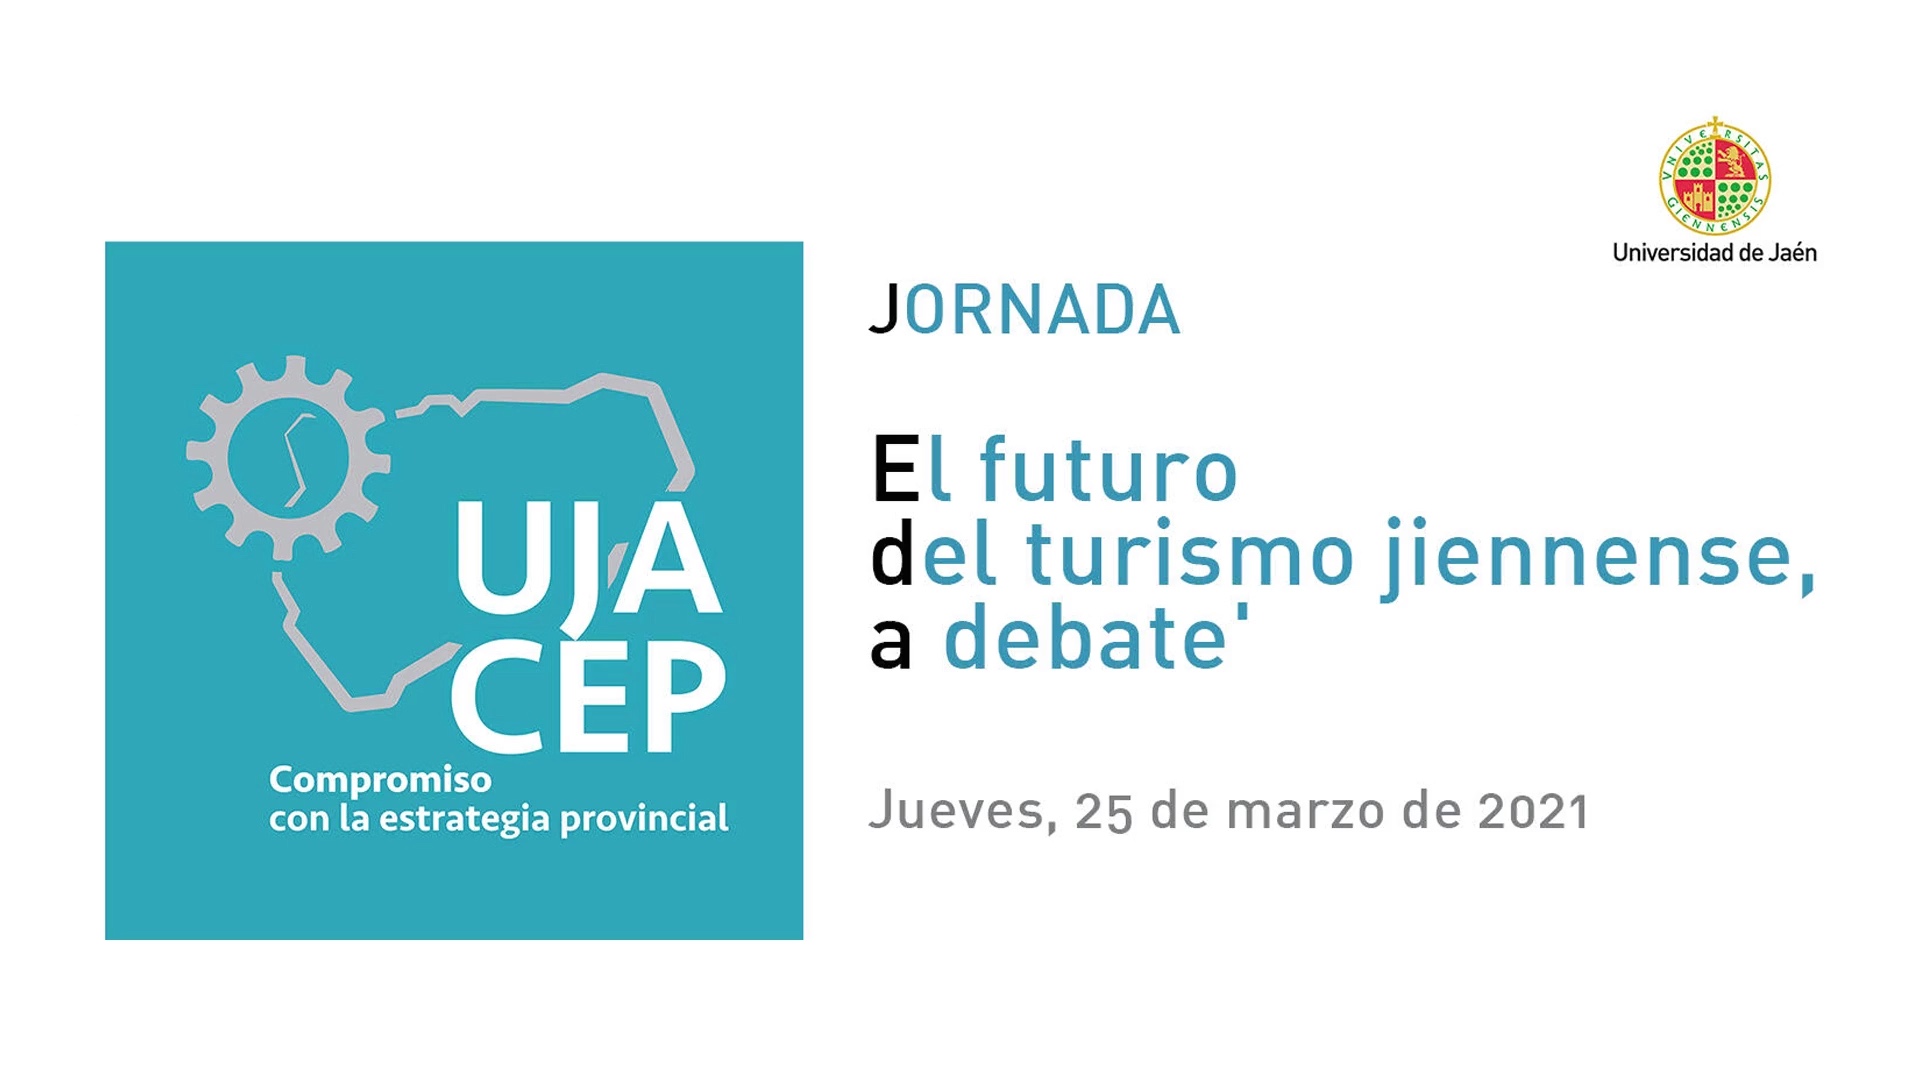 Jornada 'El futuro del turismo jiennense a debate'